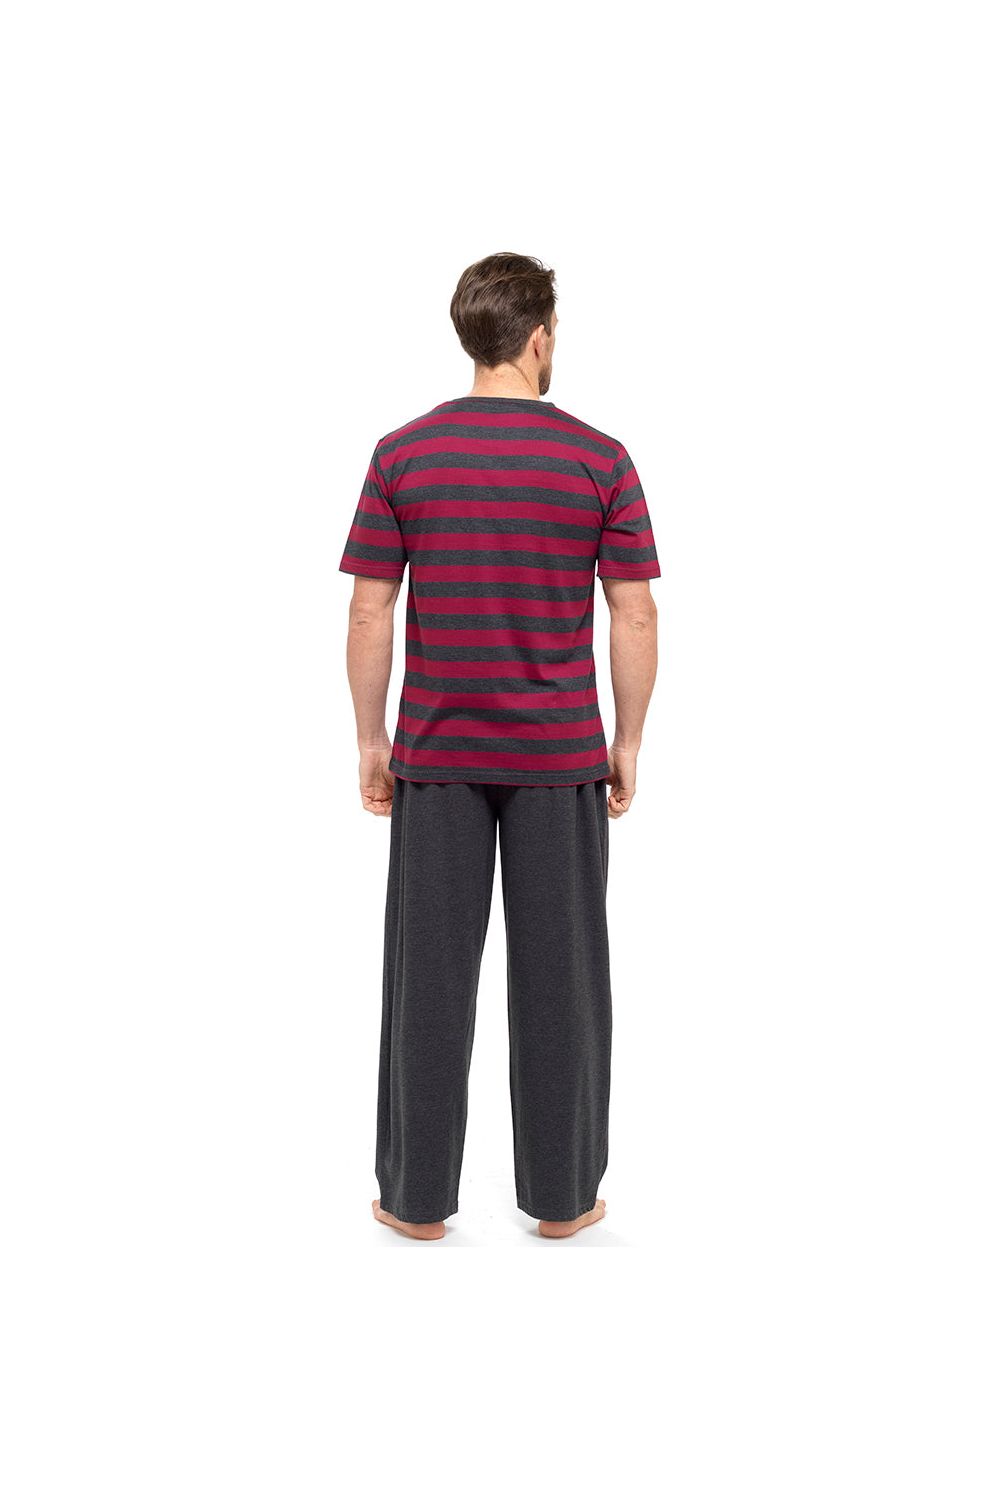 Tom Franks Mens Pyjama Set Short Sleeve Red Striped Top - Pyjamas.com